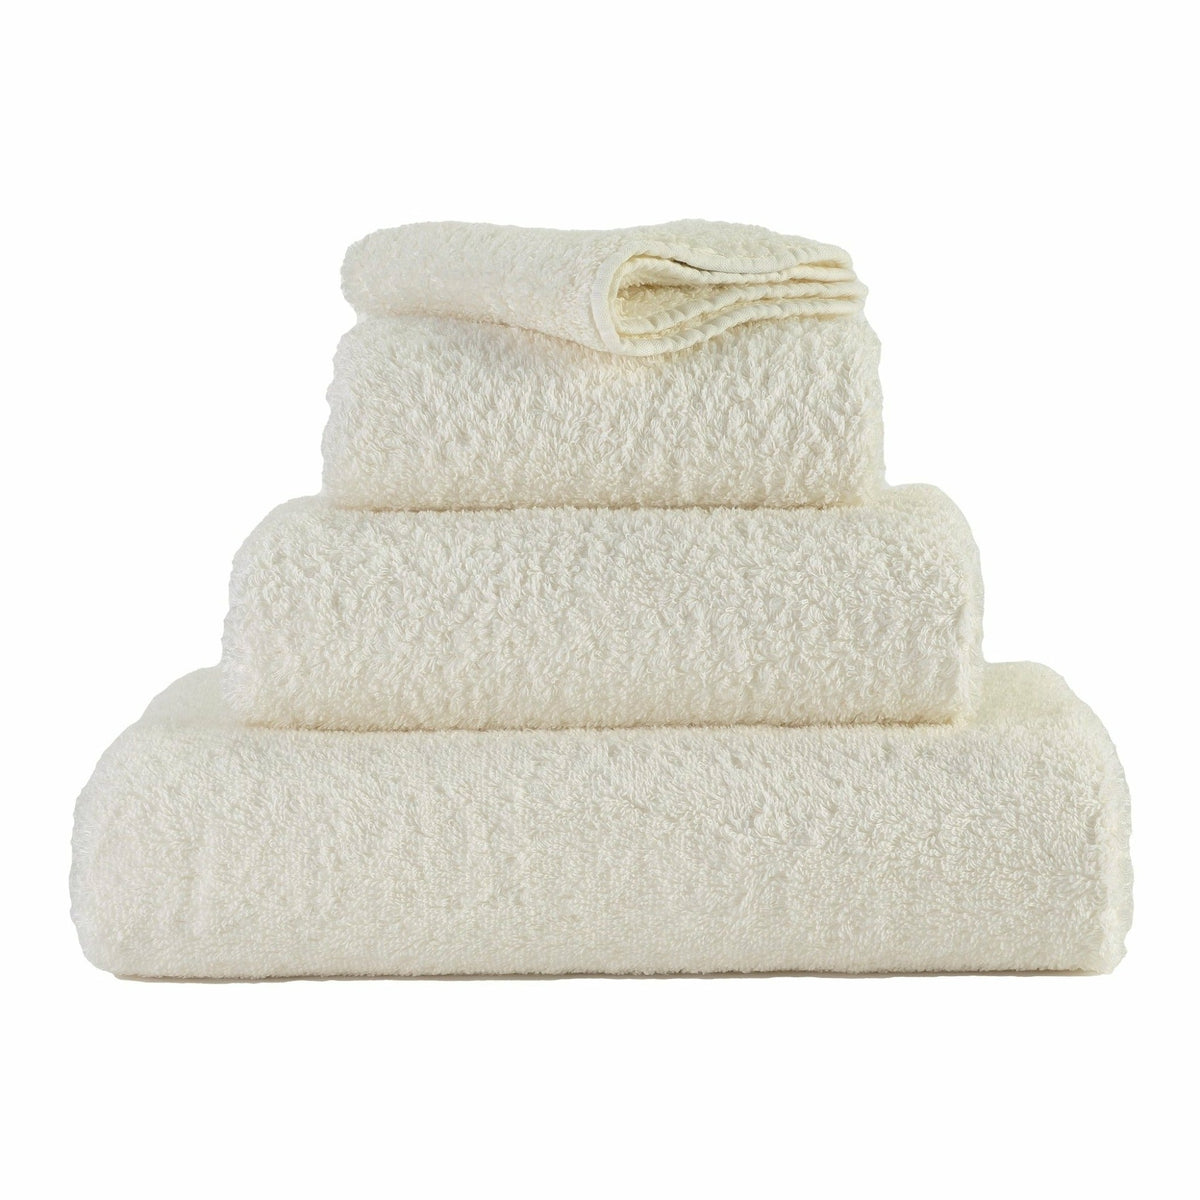 https://flandb.com/cdn/shop/products/Abyss-Super-Pile-Bath-Towels-Ivory_22bc544c-4ad1-448b-af62-f82d31f5220b_1200x.jpg?v=1666343714